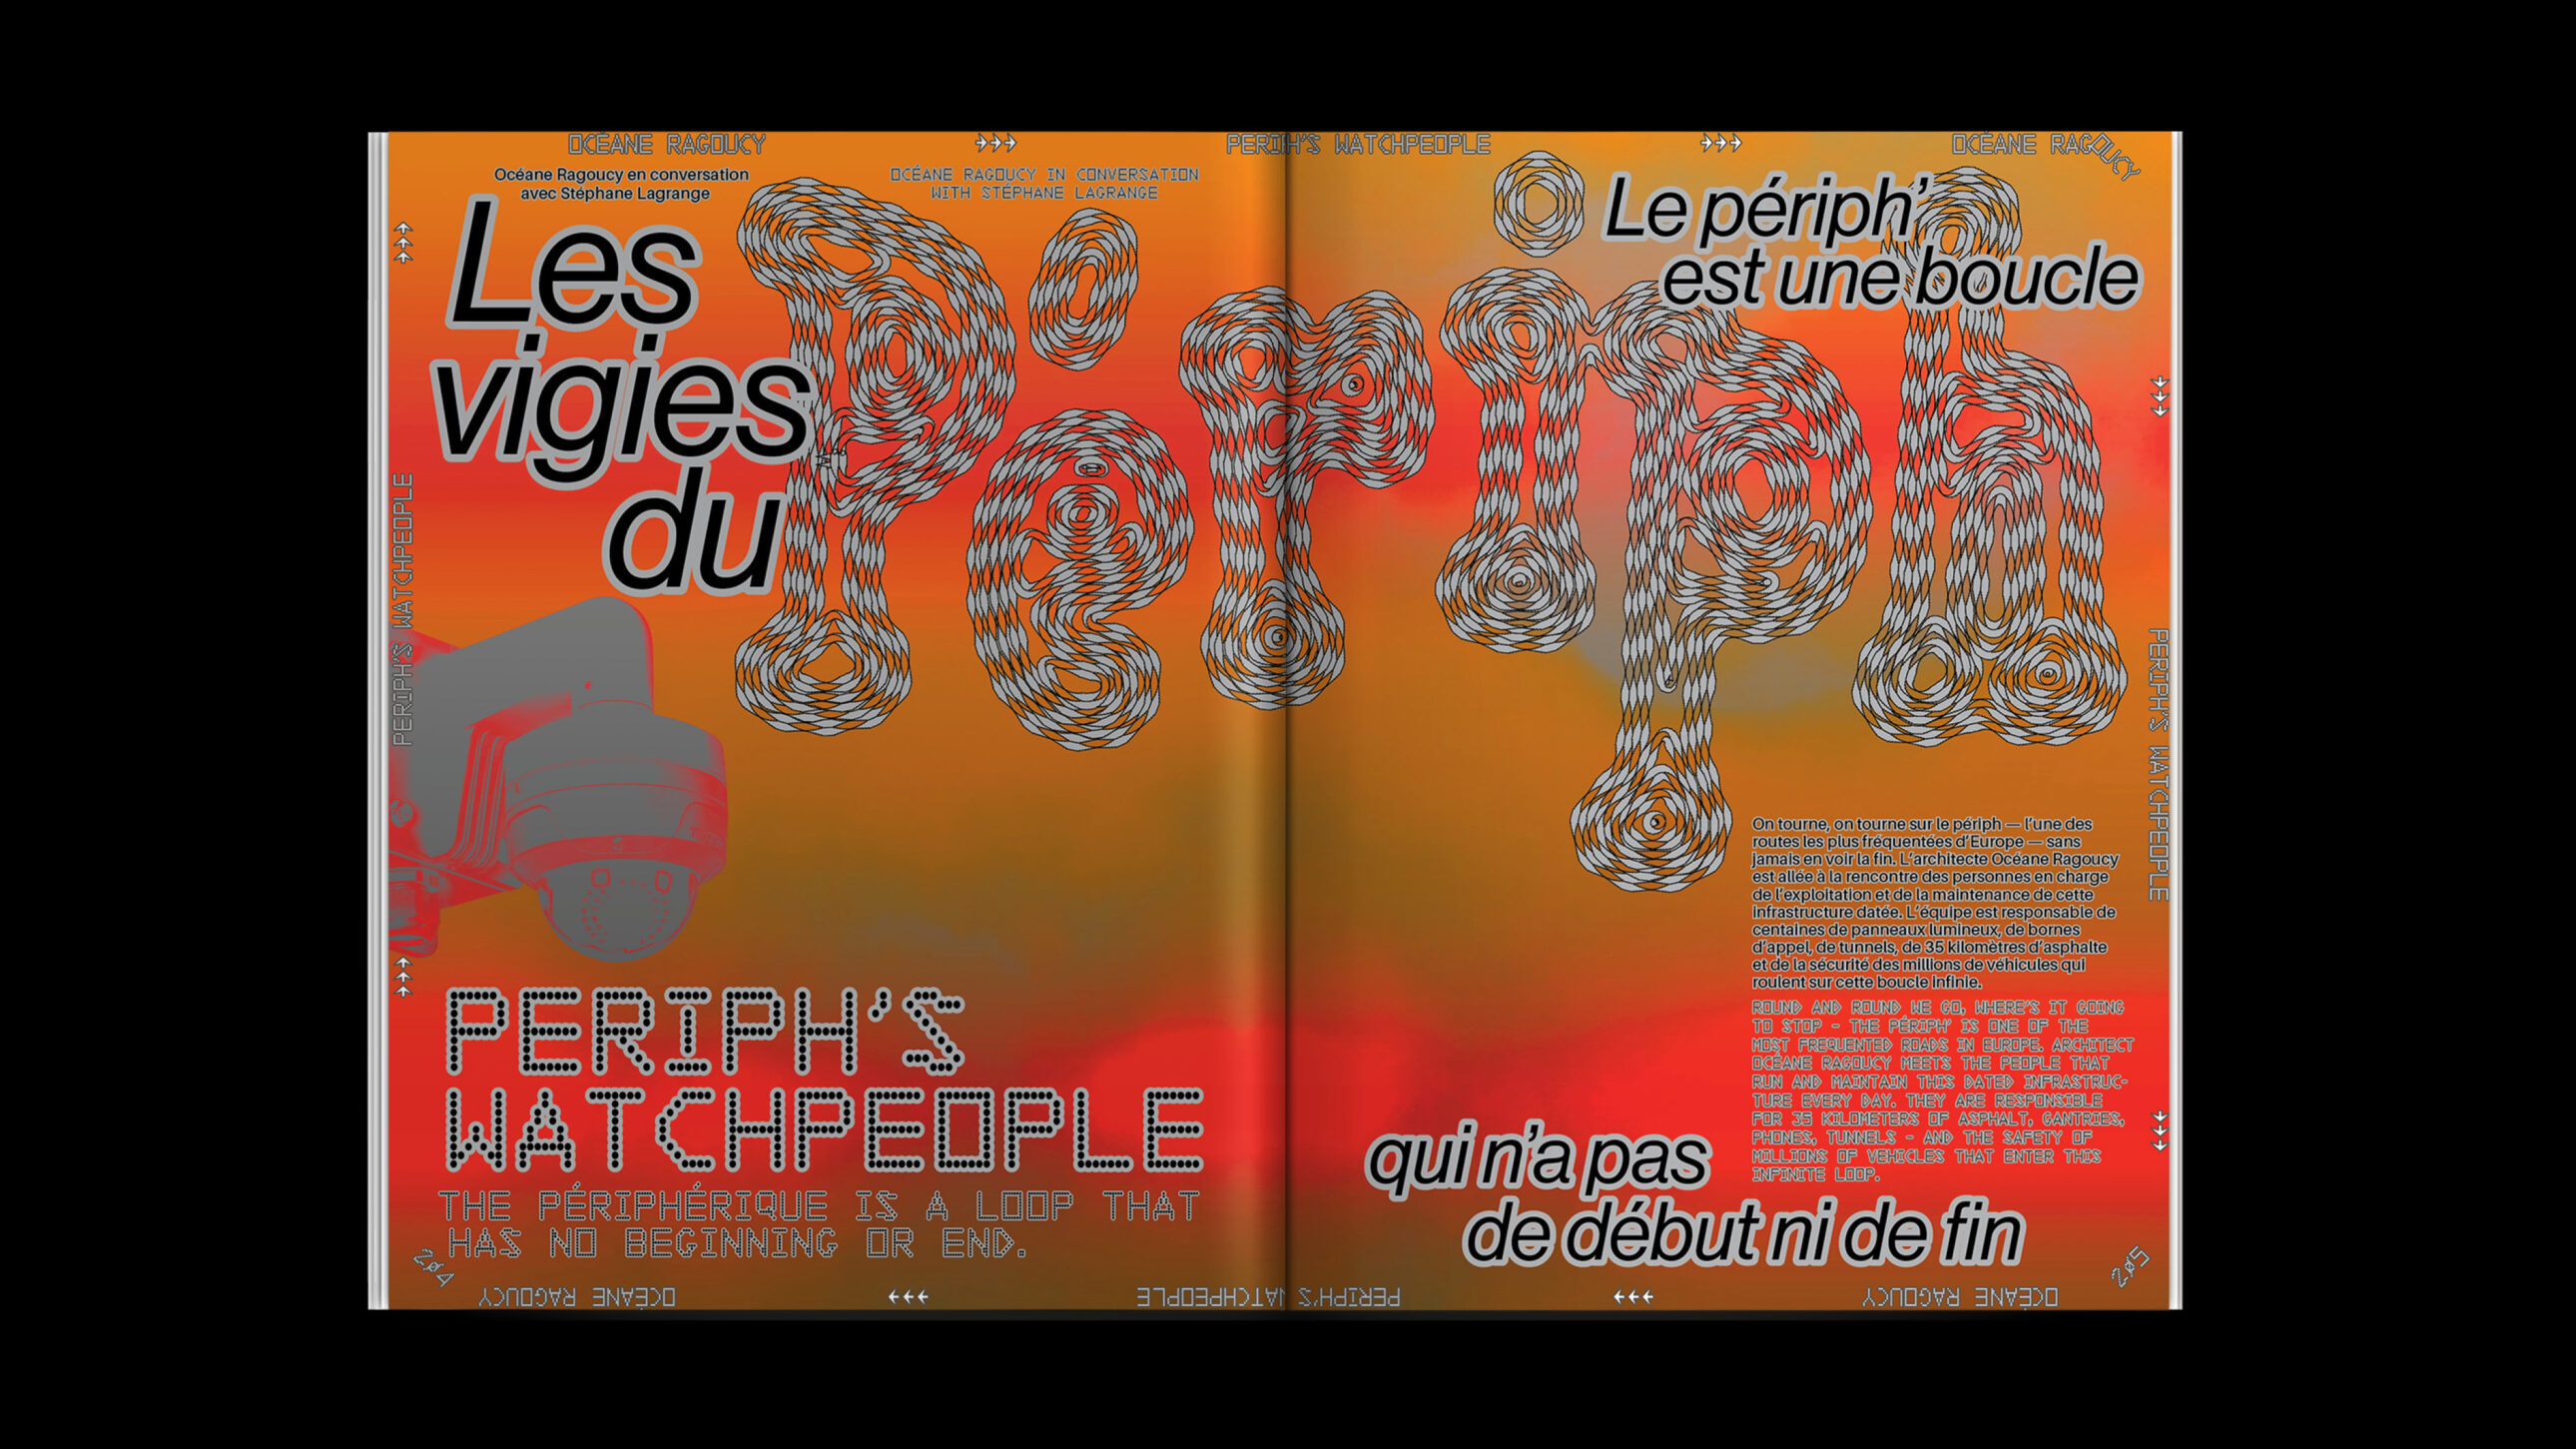 Flaneur Issue 09: Boulevard Périphérique, Paris